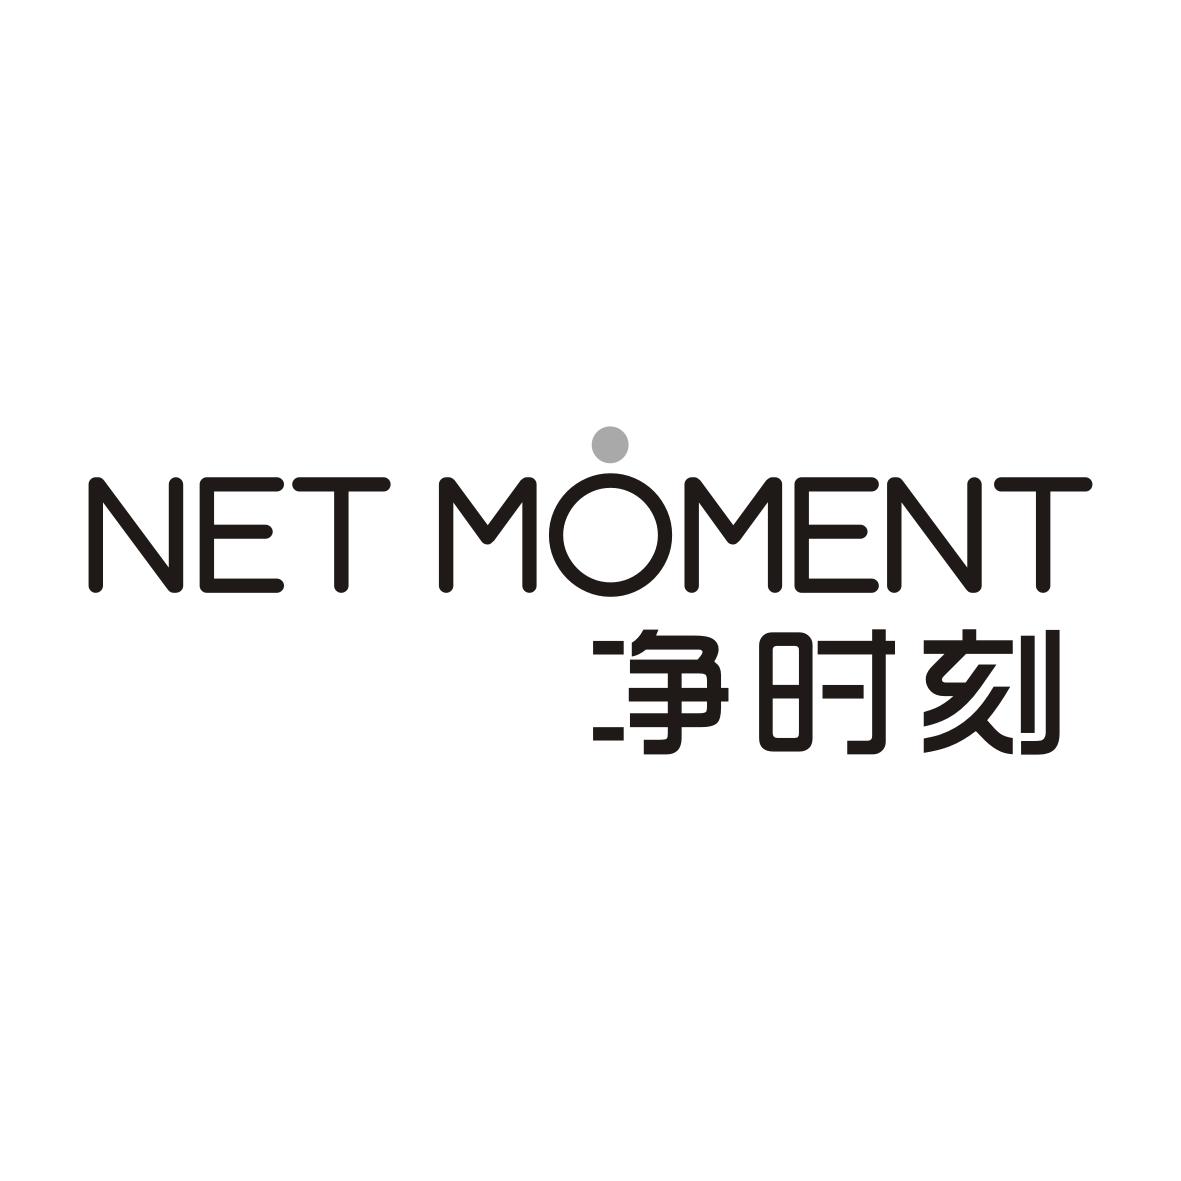 净时刻 NET MOMENT商标转让